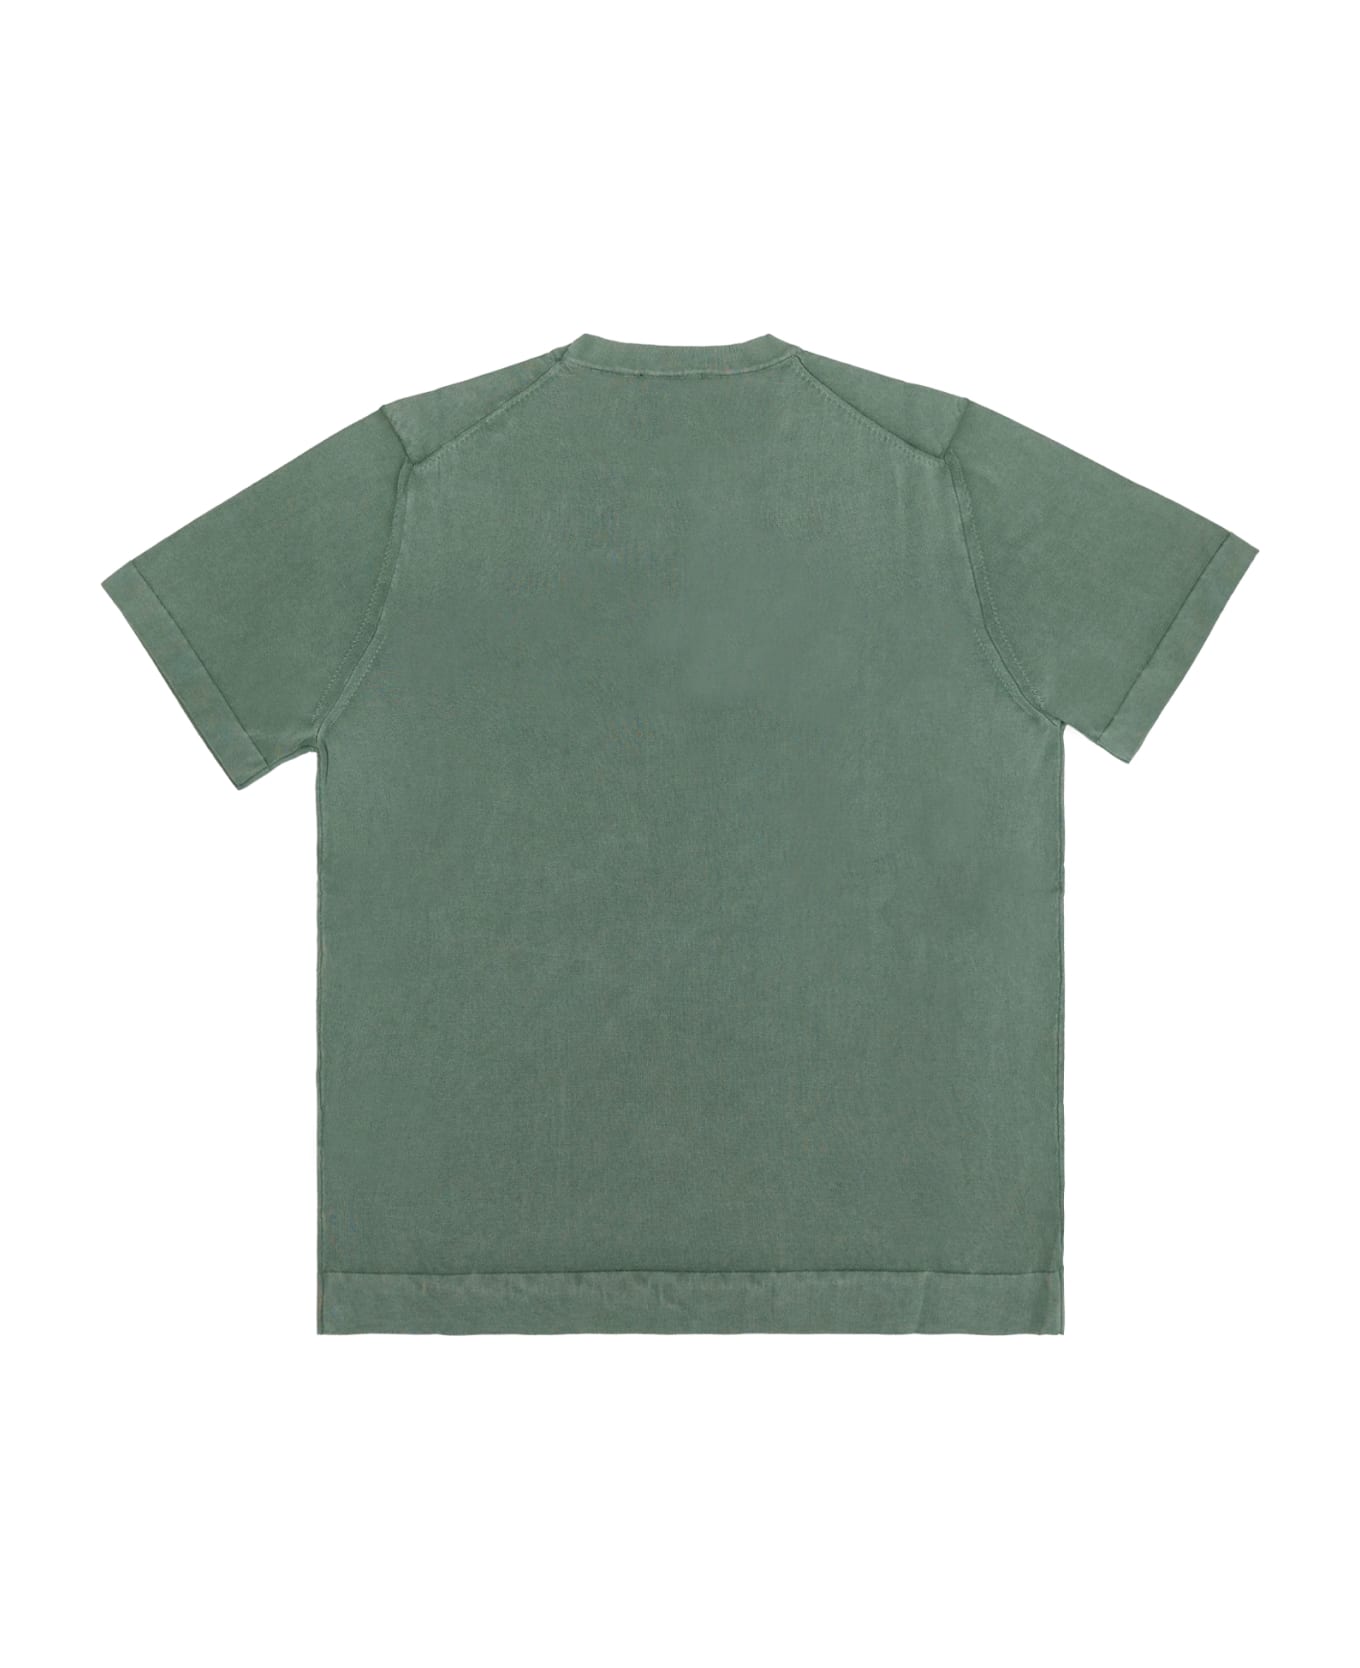 Drumohr T-shirt - Green